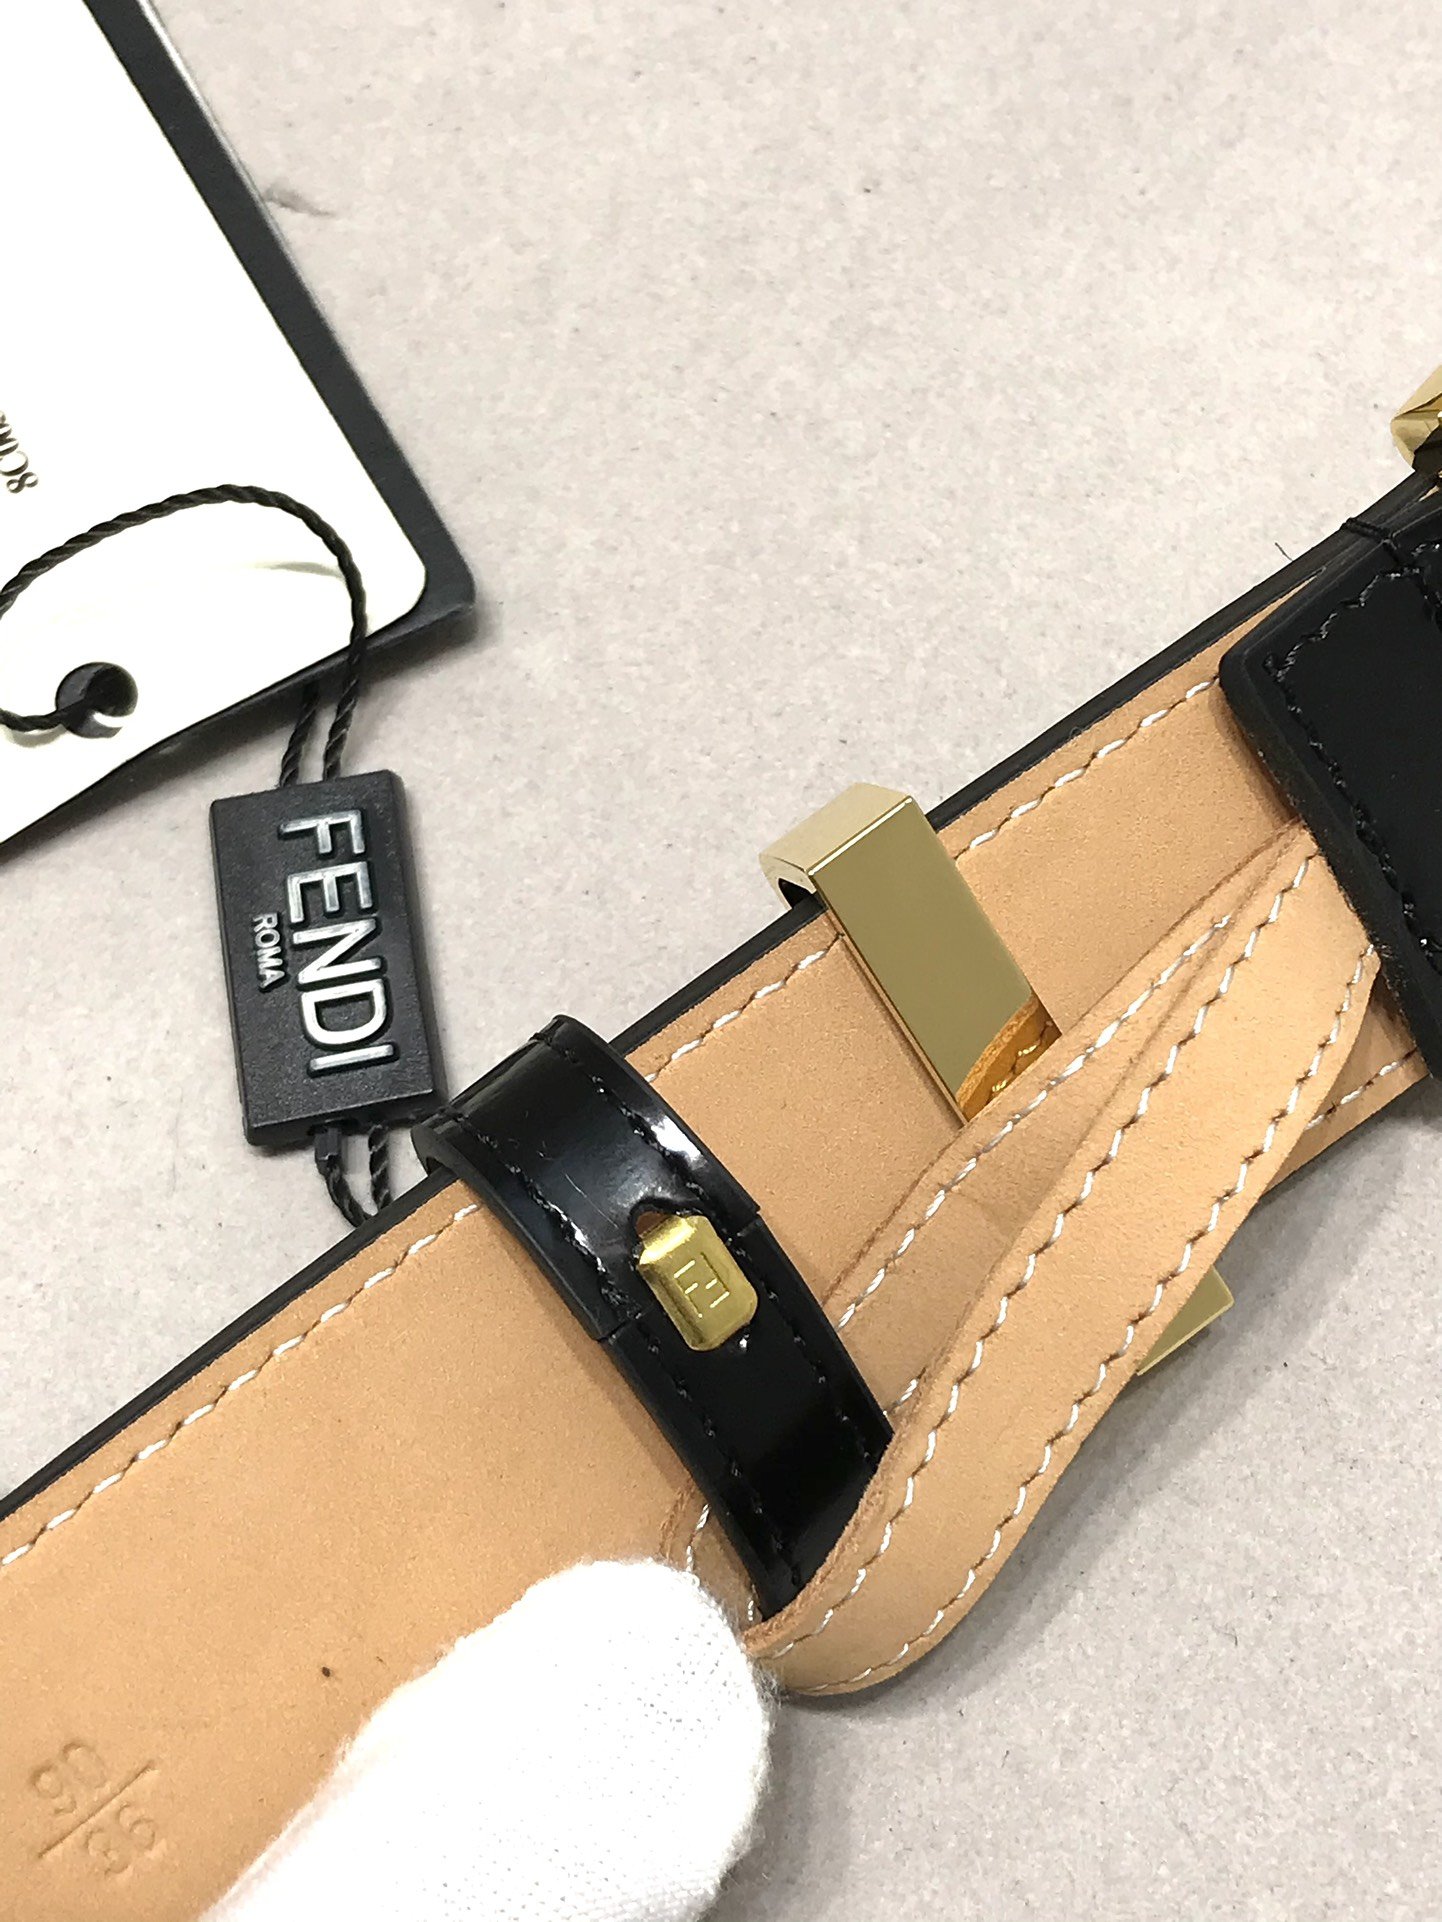 芬迪宽35MMF标志造型皮带支持NFC针扣式钢环带扣进口亮光小牛皮搭配树膏制成镀金表面金属制品原版细节走